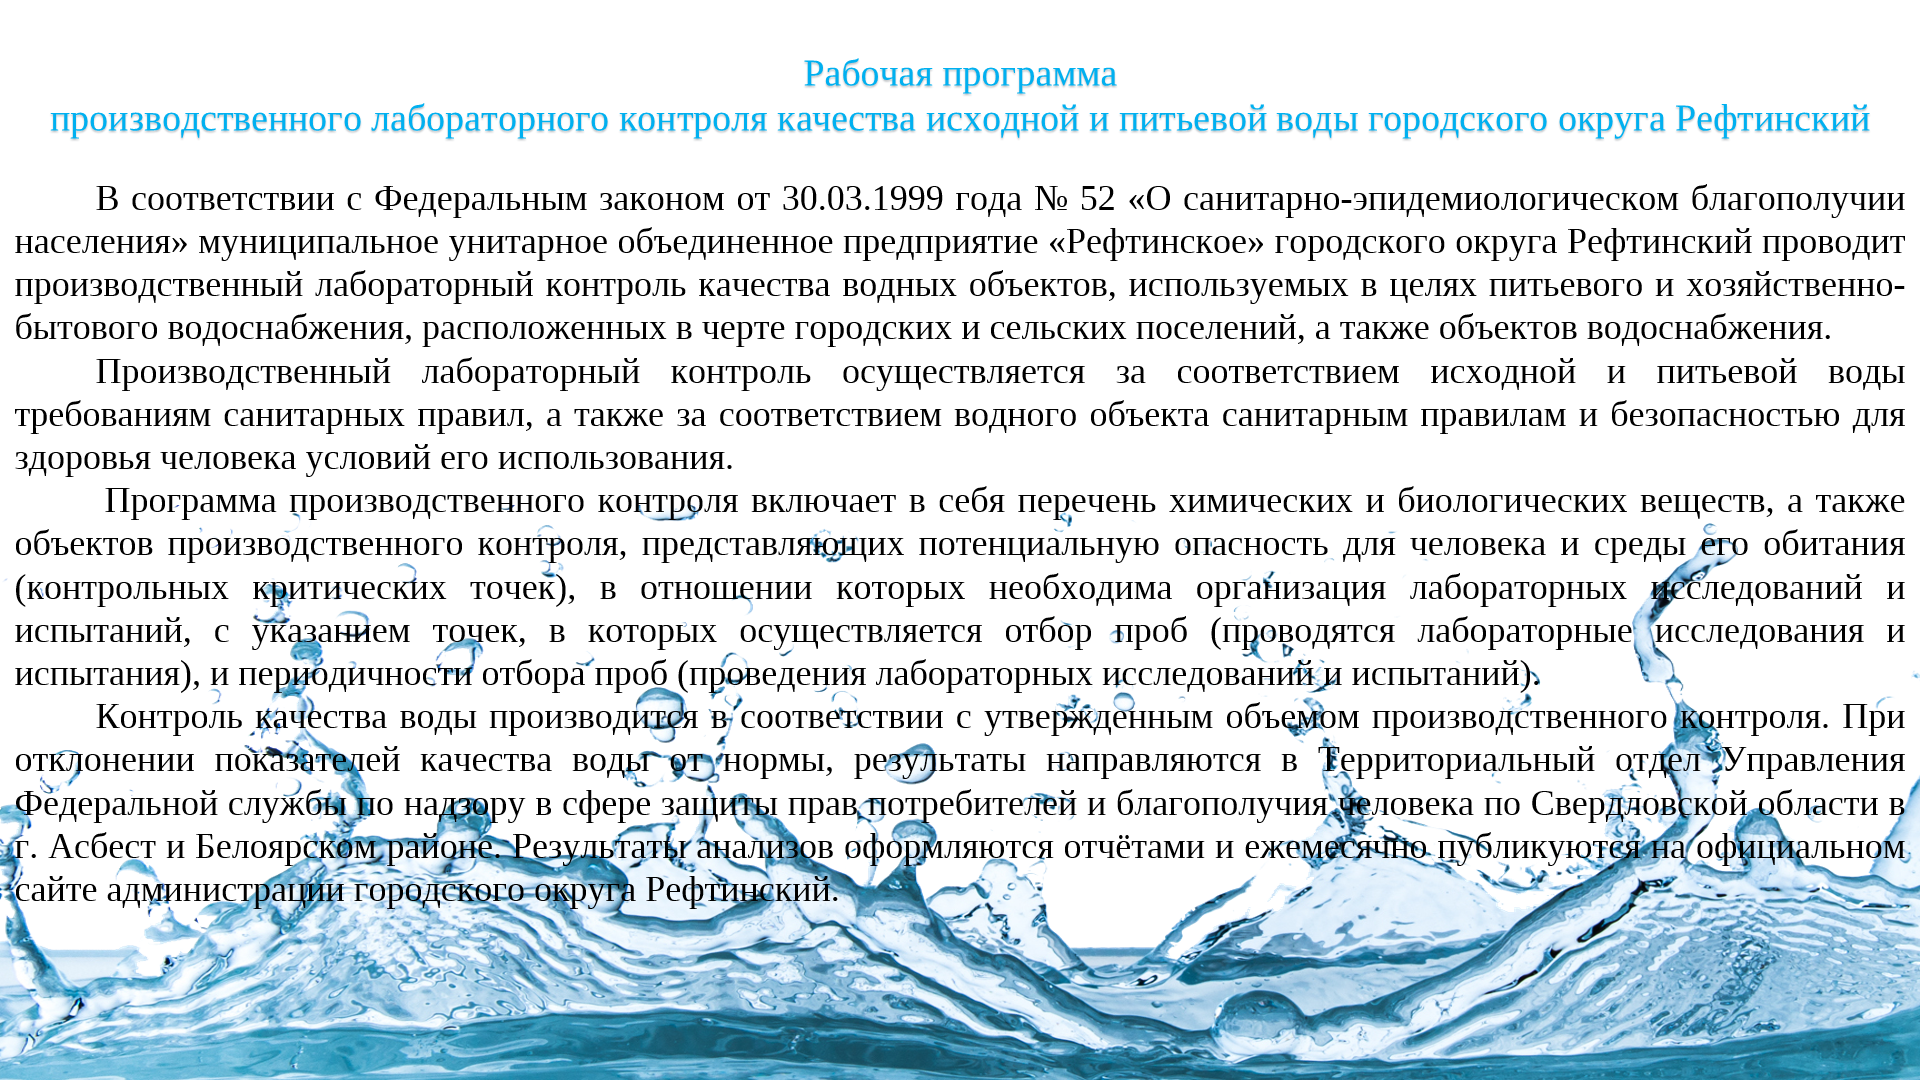 Рабочая программа производственного лабороторного контроля исходной и питьевой воды городского округа Рефтинский